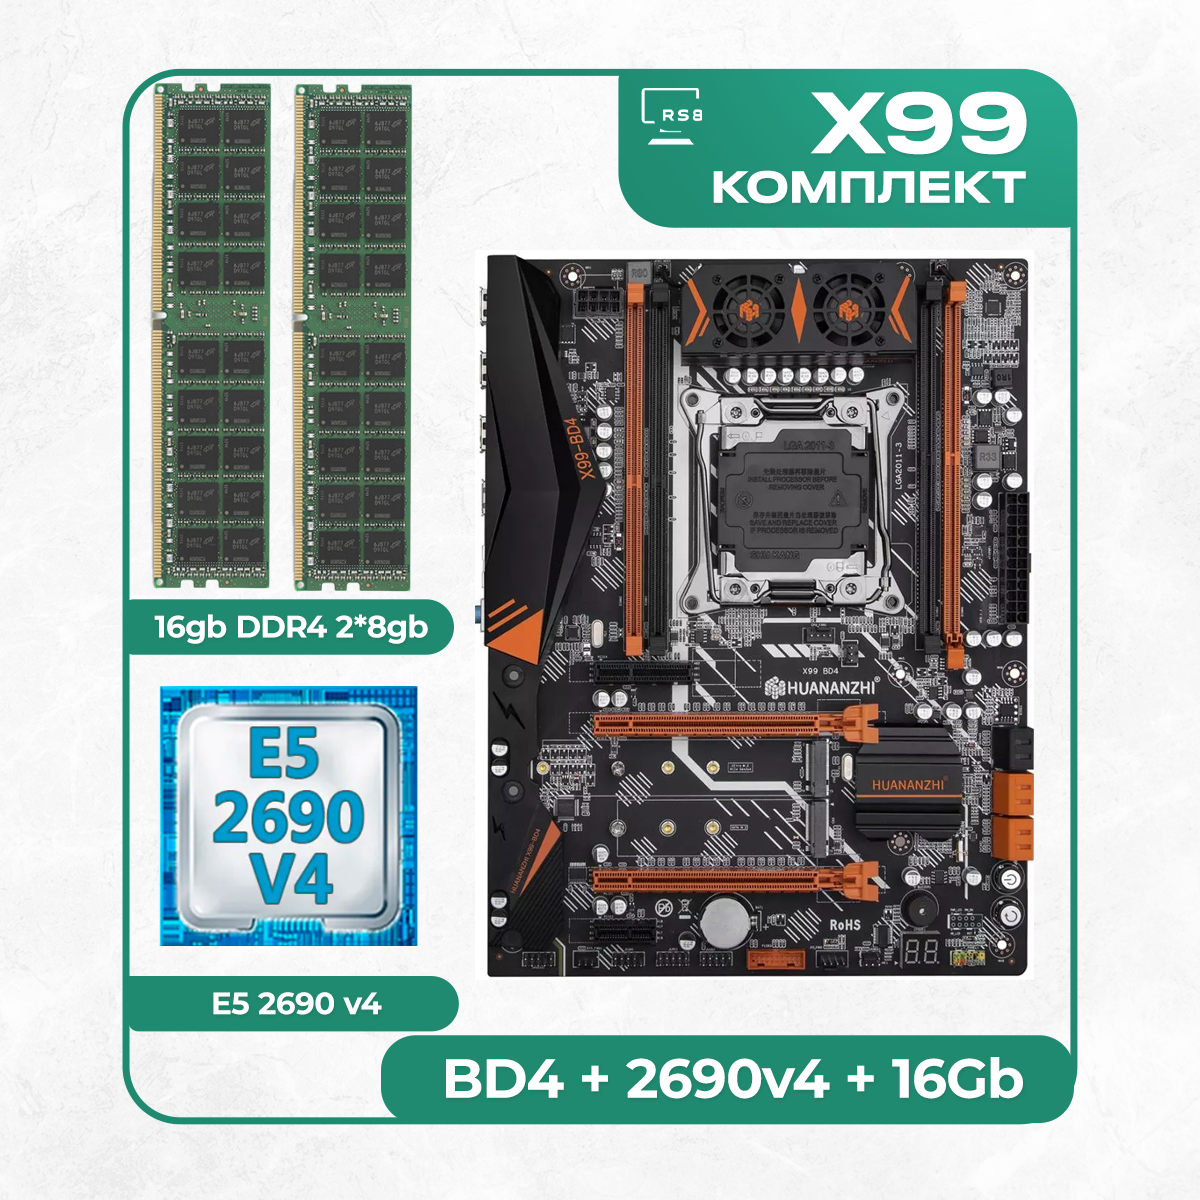 Комплект материнской платы X99: Huananzhi BD4 2011v3 + Xeon E5 2690v4 + DDR4 16Гб